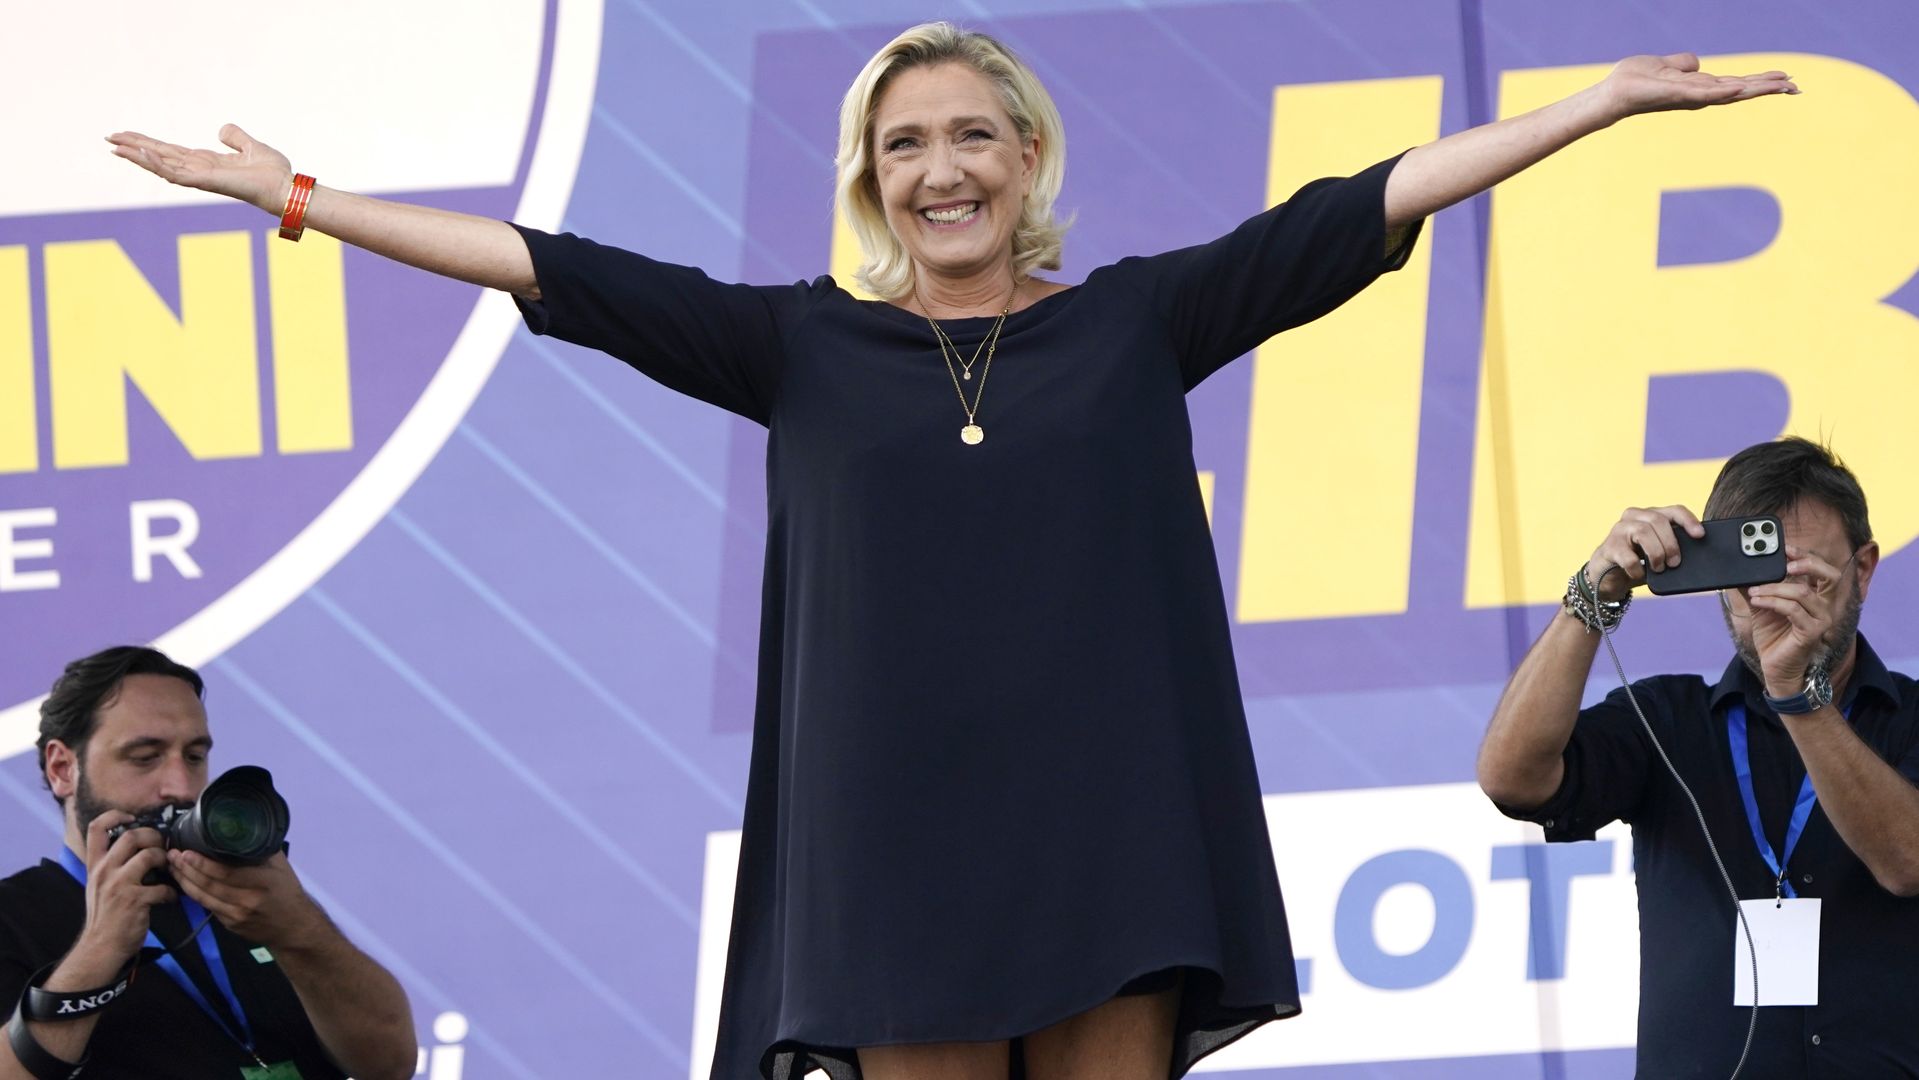 Marine Le Pen, była szefowa Zjednoczenia (dawniej Frontu) Narodowego, liderka francuskiej prawicy